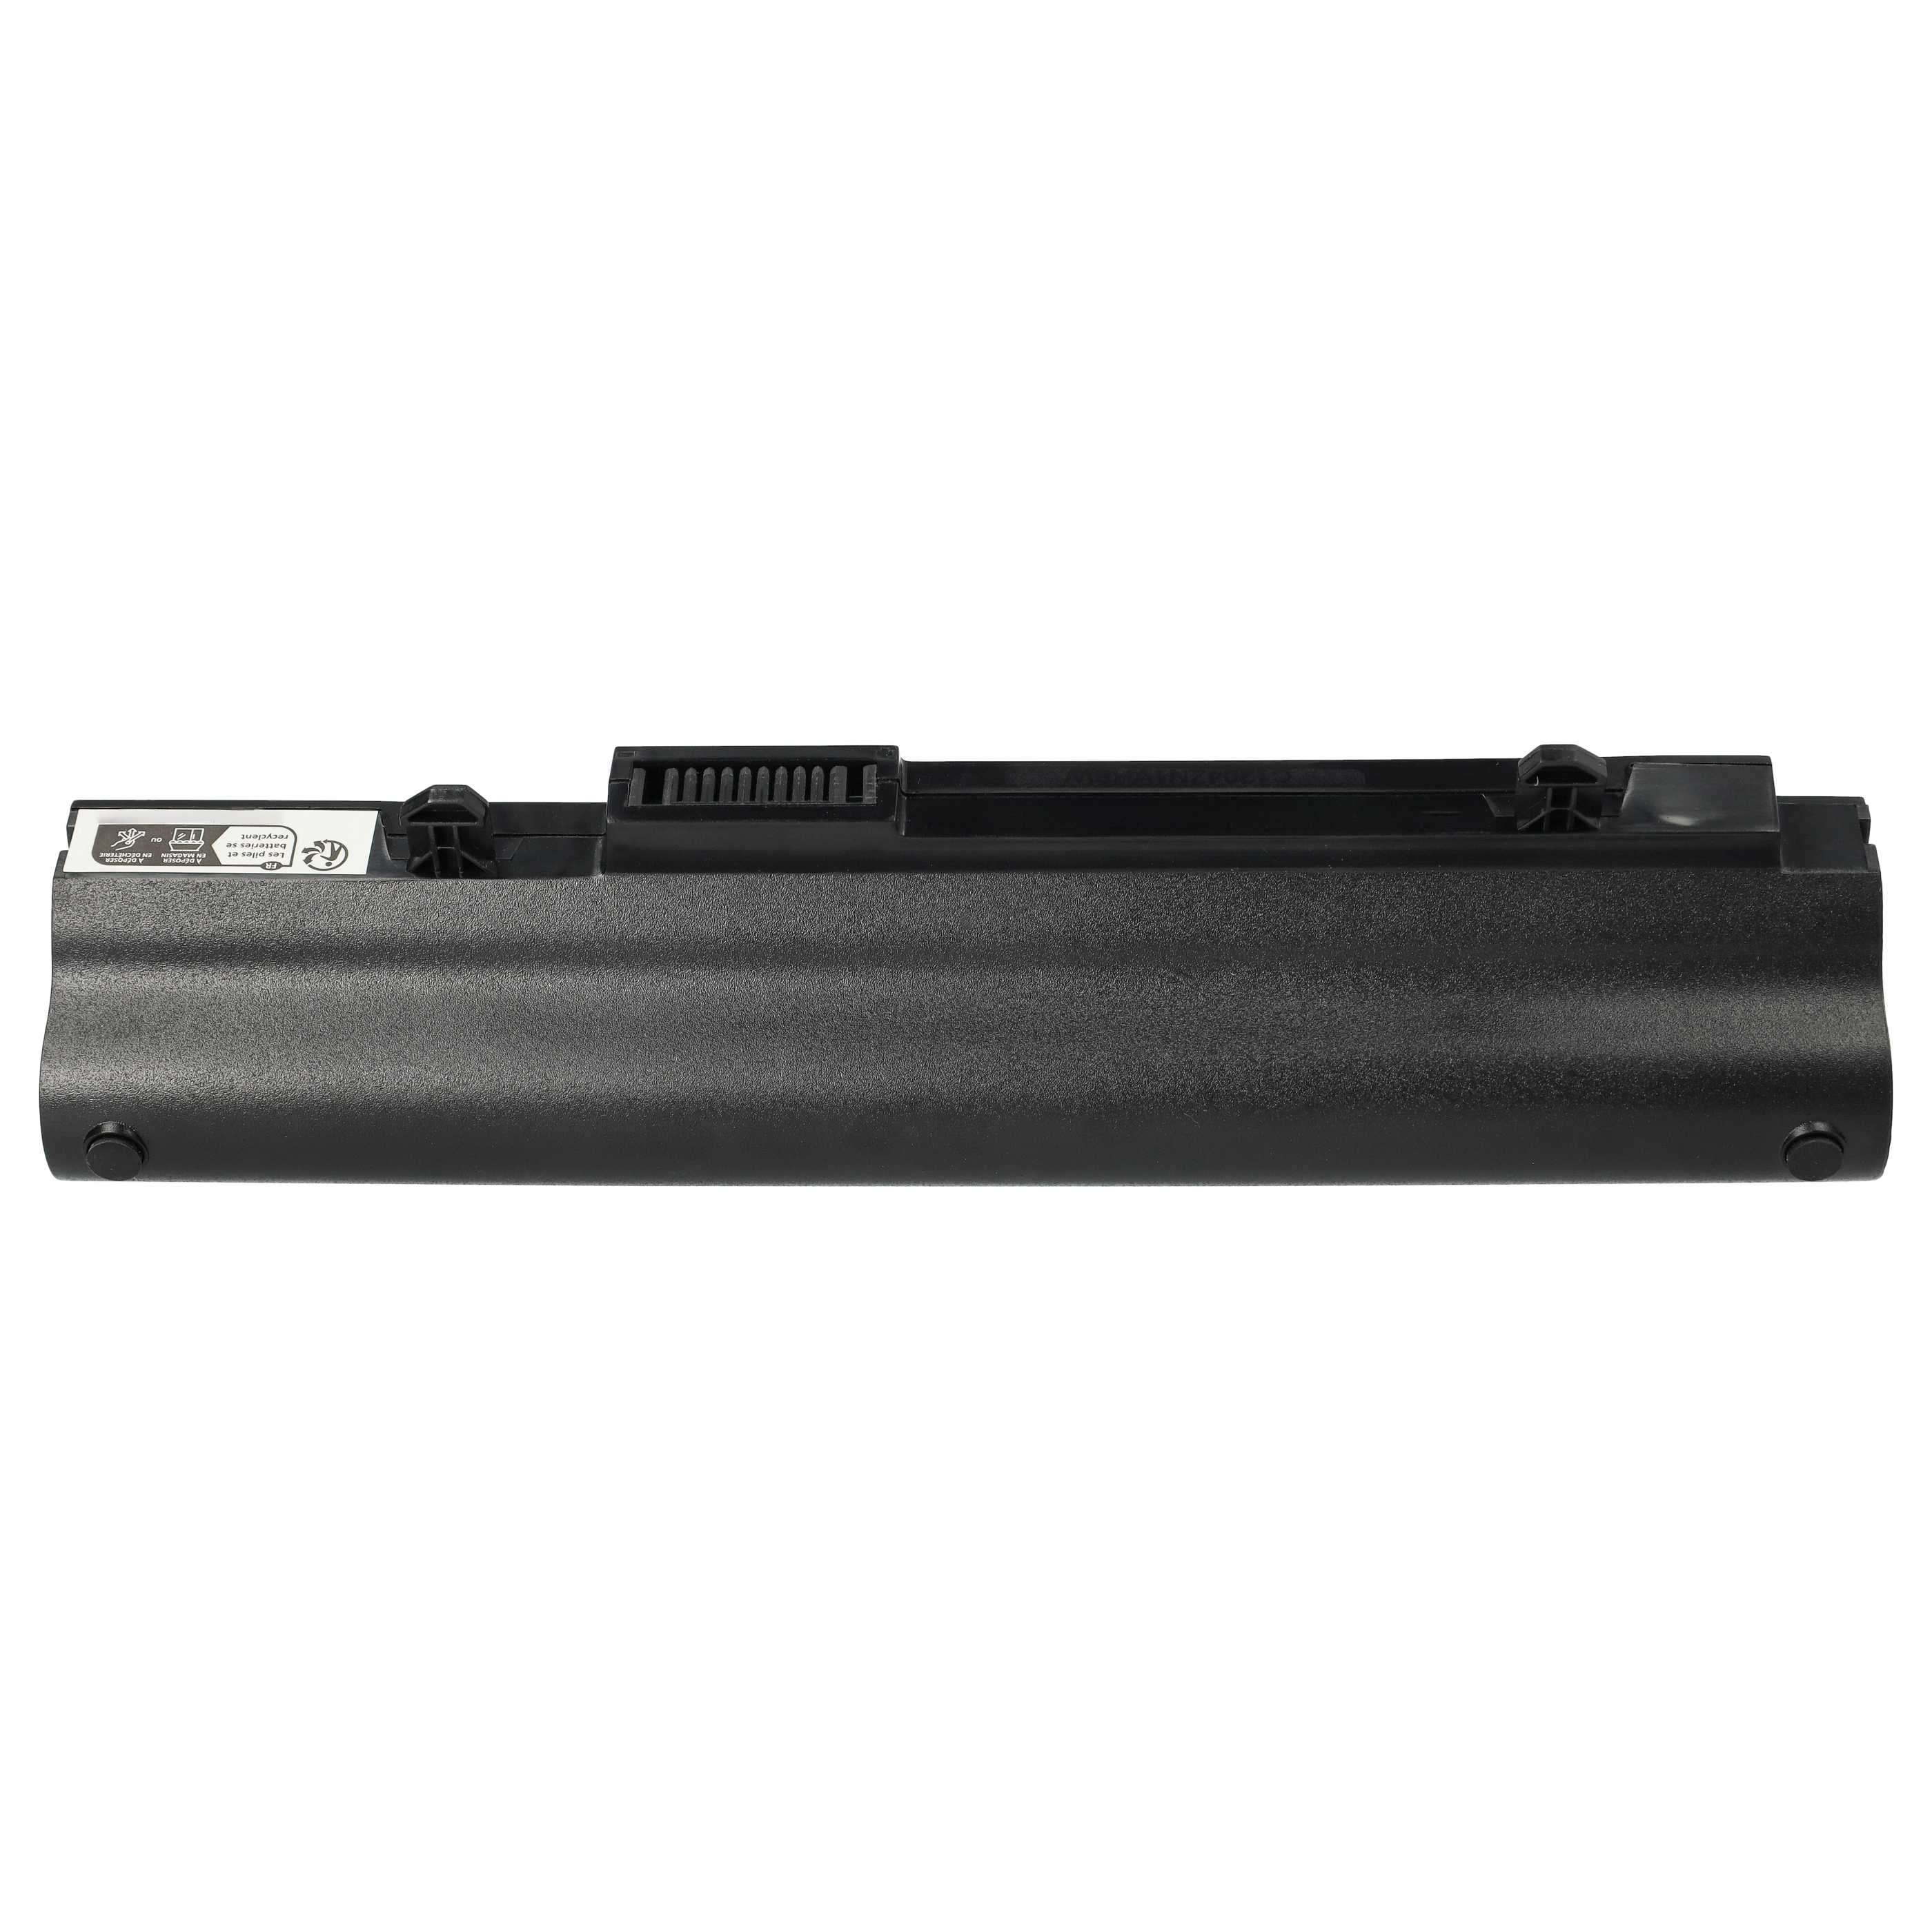 Batteria sostituisce Asus A31-1015, A32-1015, AL31-1015 per notebook Asus - 2200mAh 10,8V Li-Ion nero